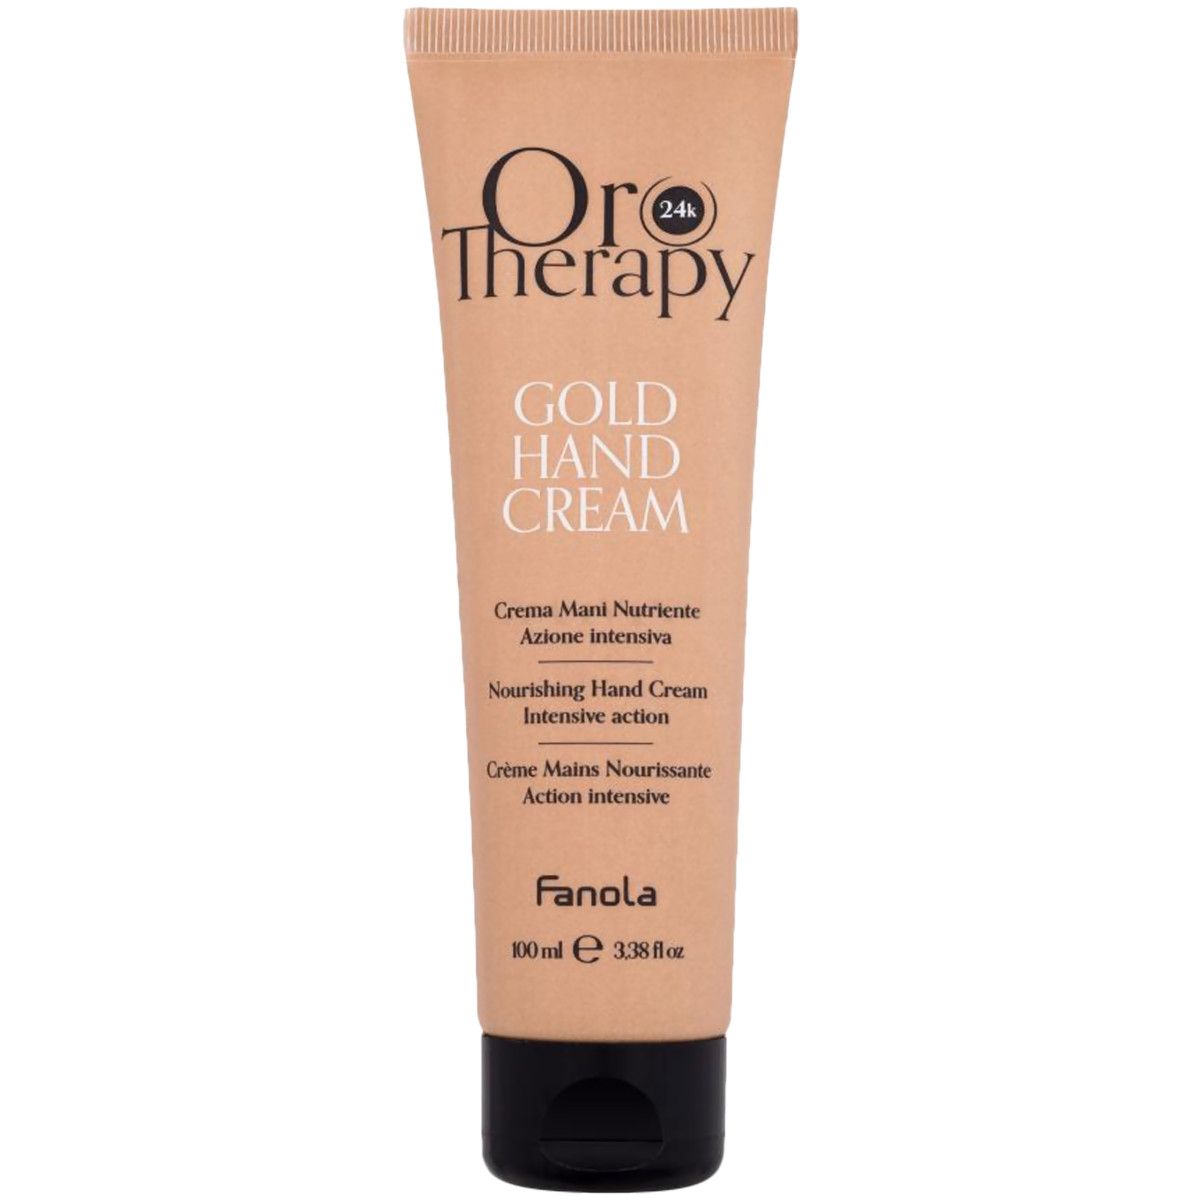 Fanola OroTherapy Gold Cream - odżywczy krem do rąk, 100ml